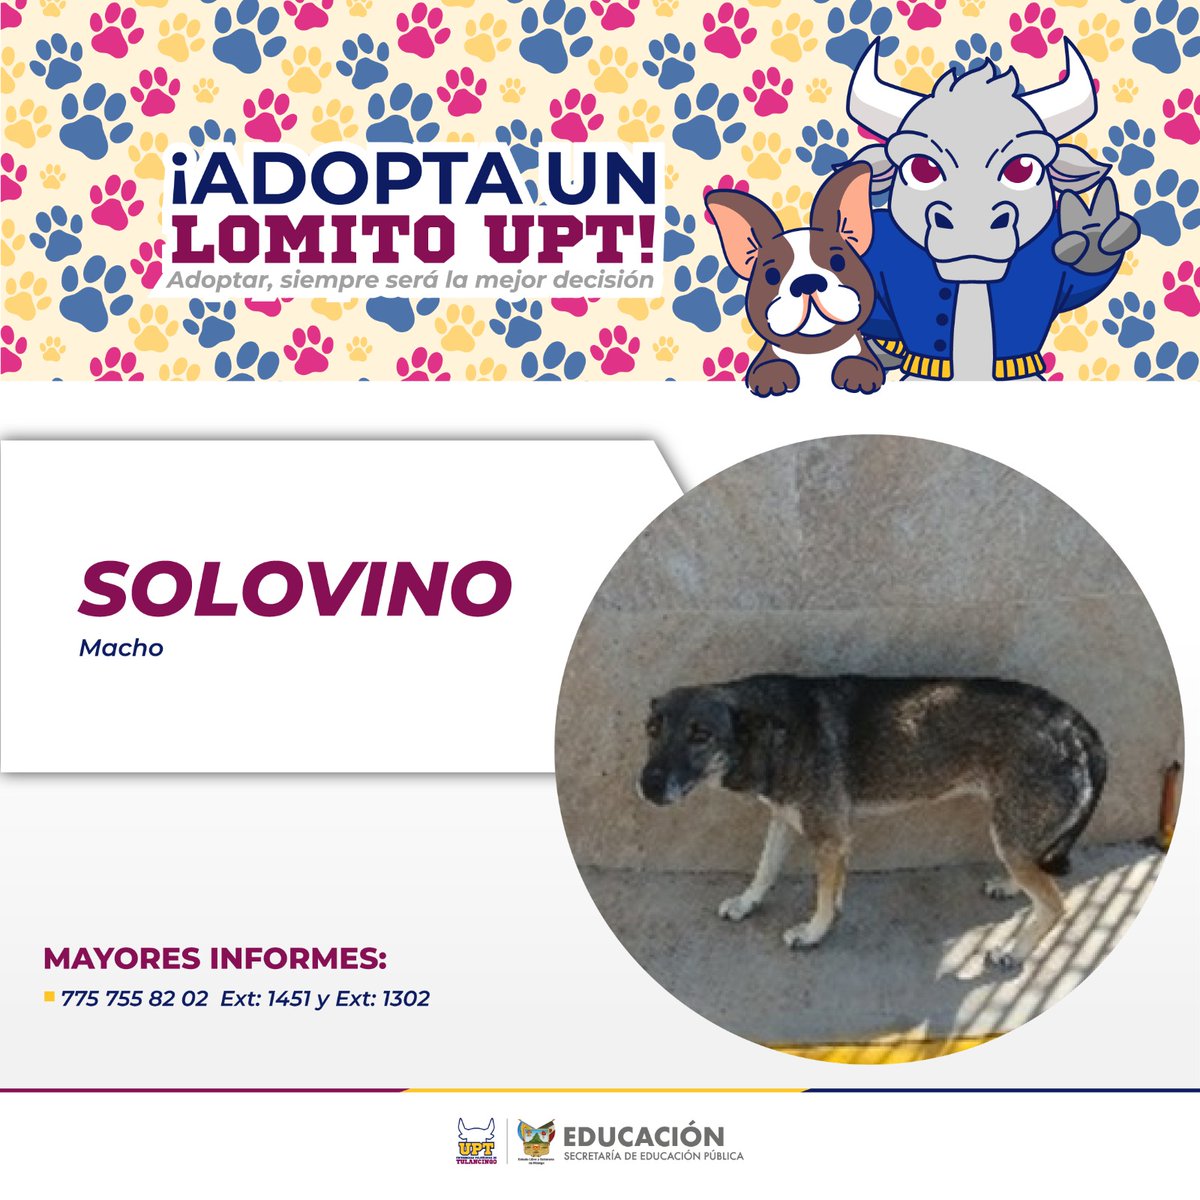 #AdoptaUnLomitoUPT

'Solovino' necesita una familia, ayúdanos a encontrarle un hogar definitivo, lo merece.  

Recuerda que adoptar, siempre será la mejor decisión. ❤️
Informes: 7757558202 extensión 1302 y 1451